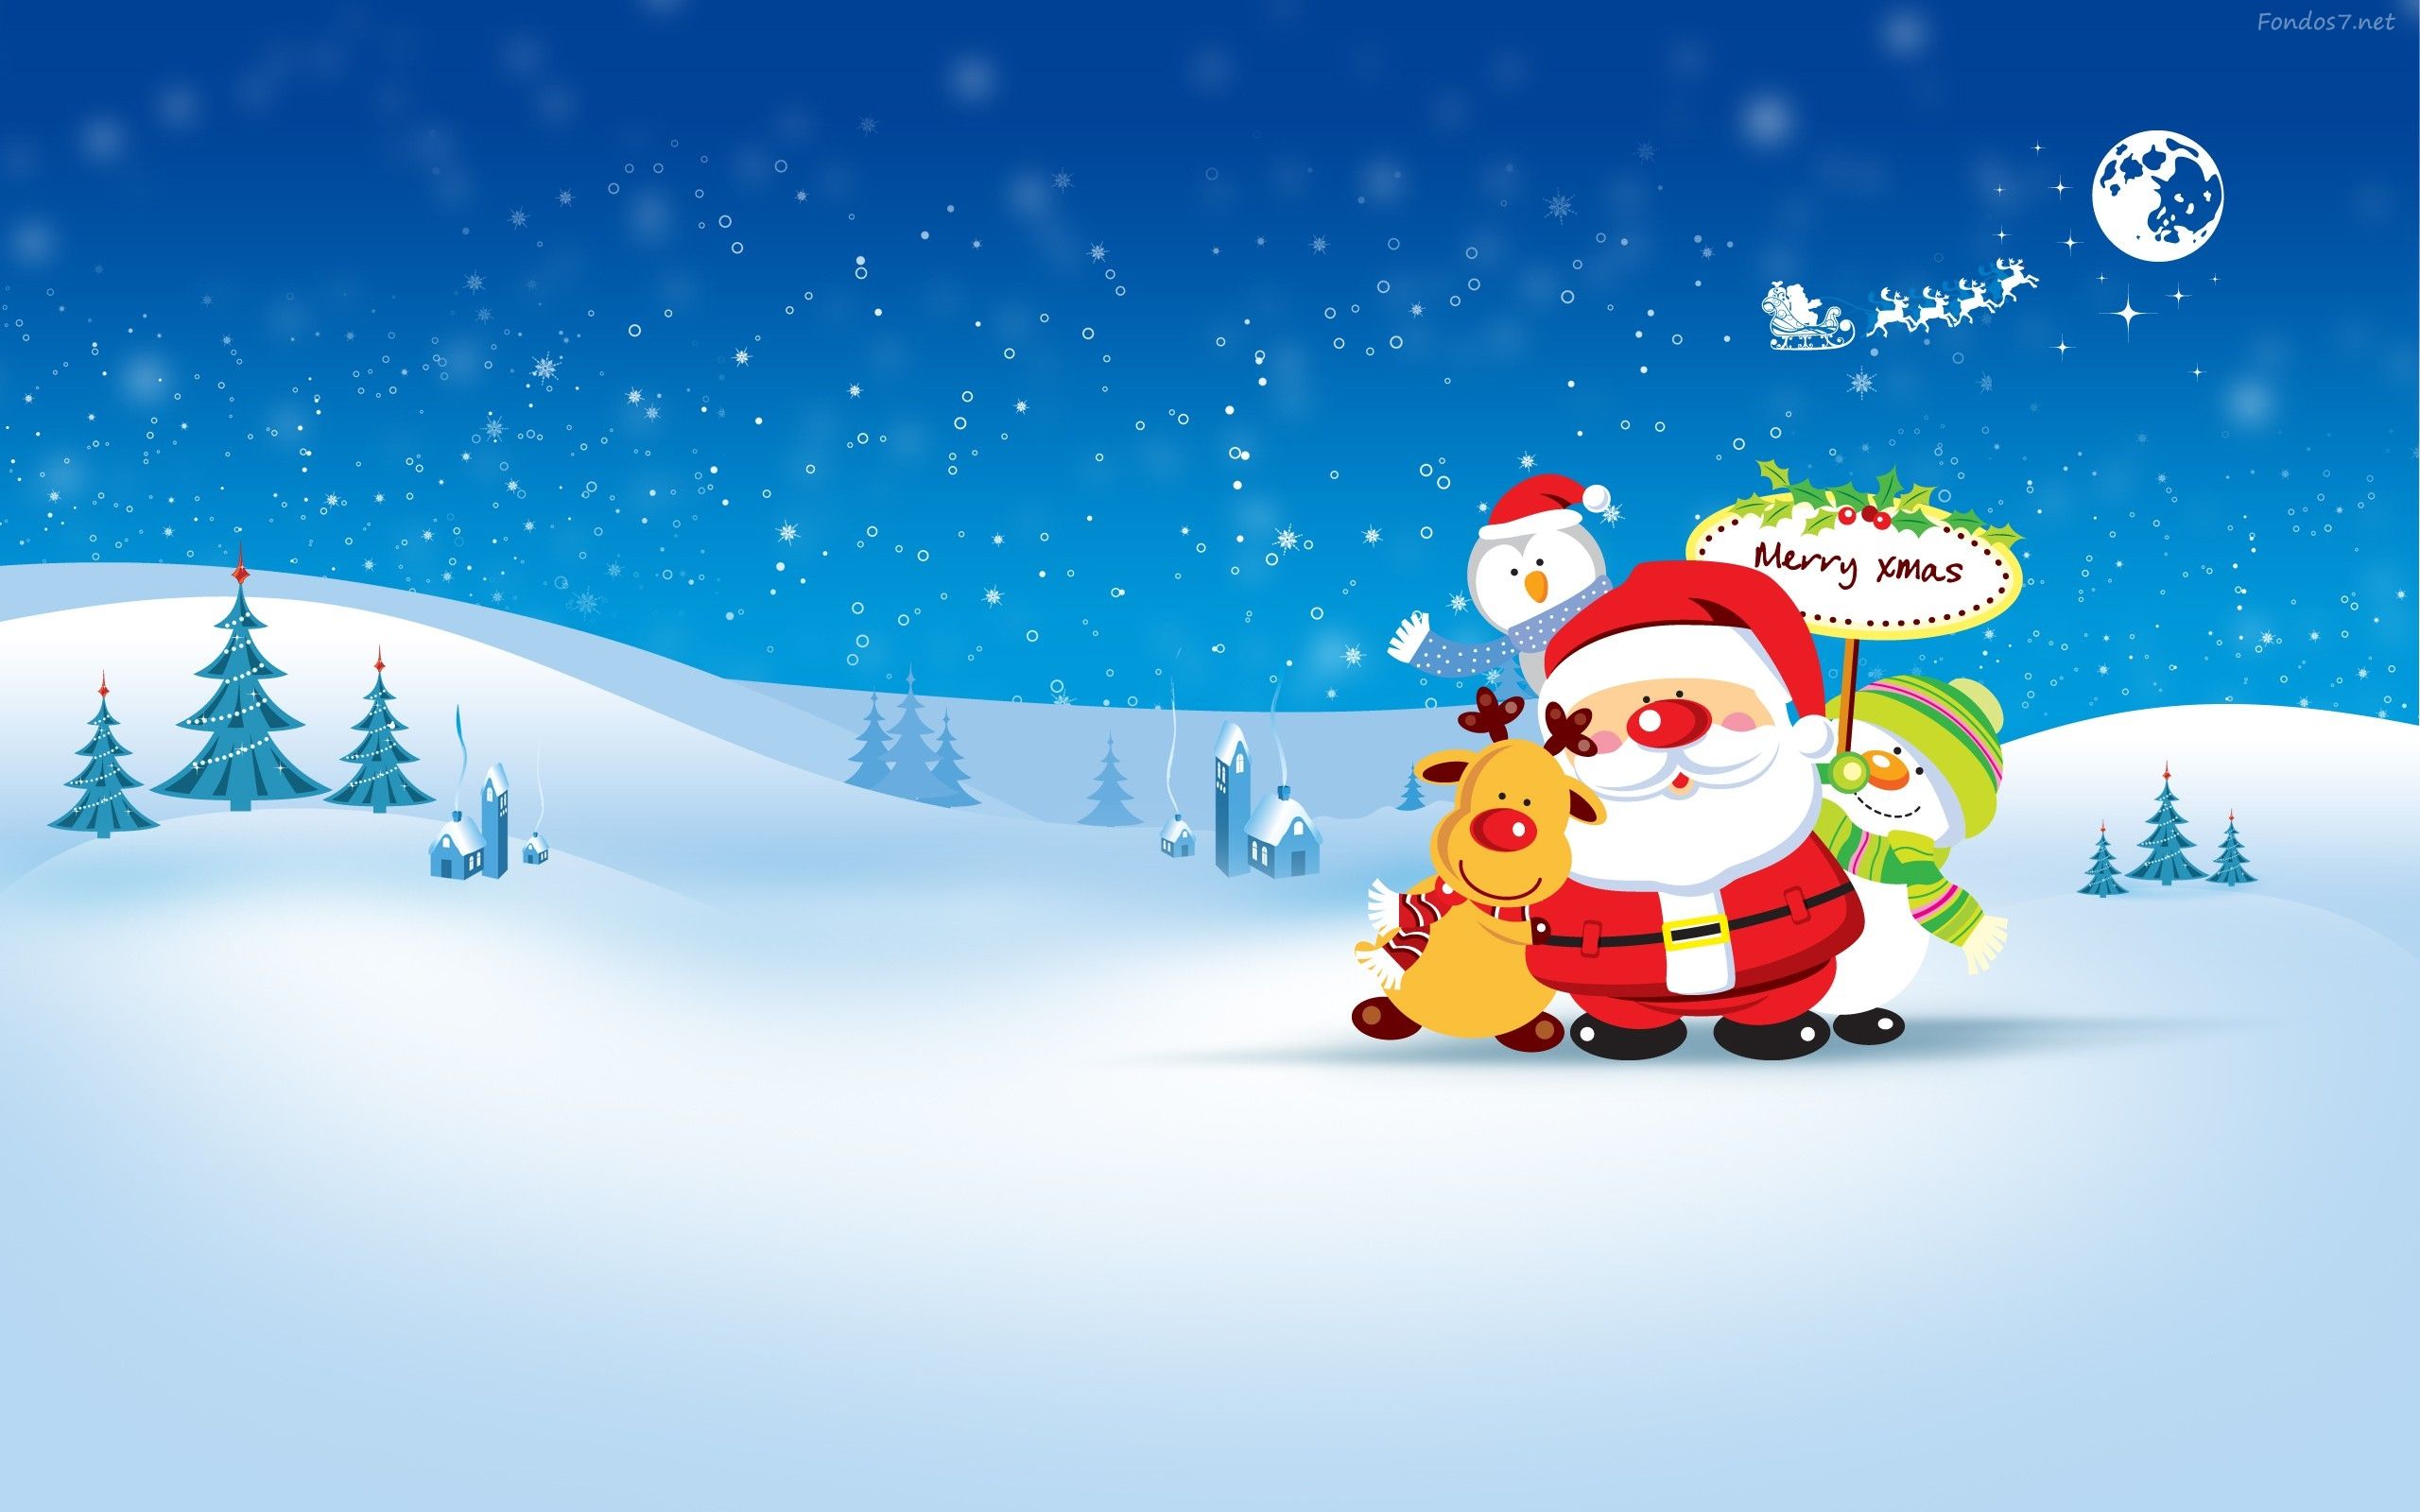 Descargar fondos de pantalla feliz navidad 2012 hd widescreen gratis